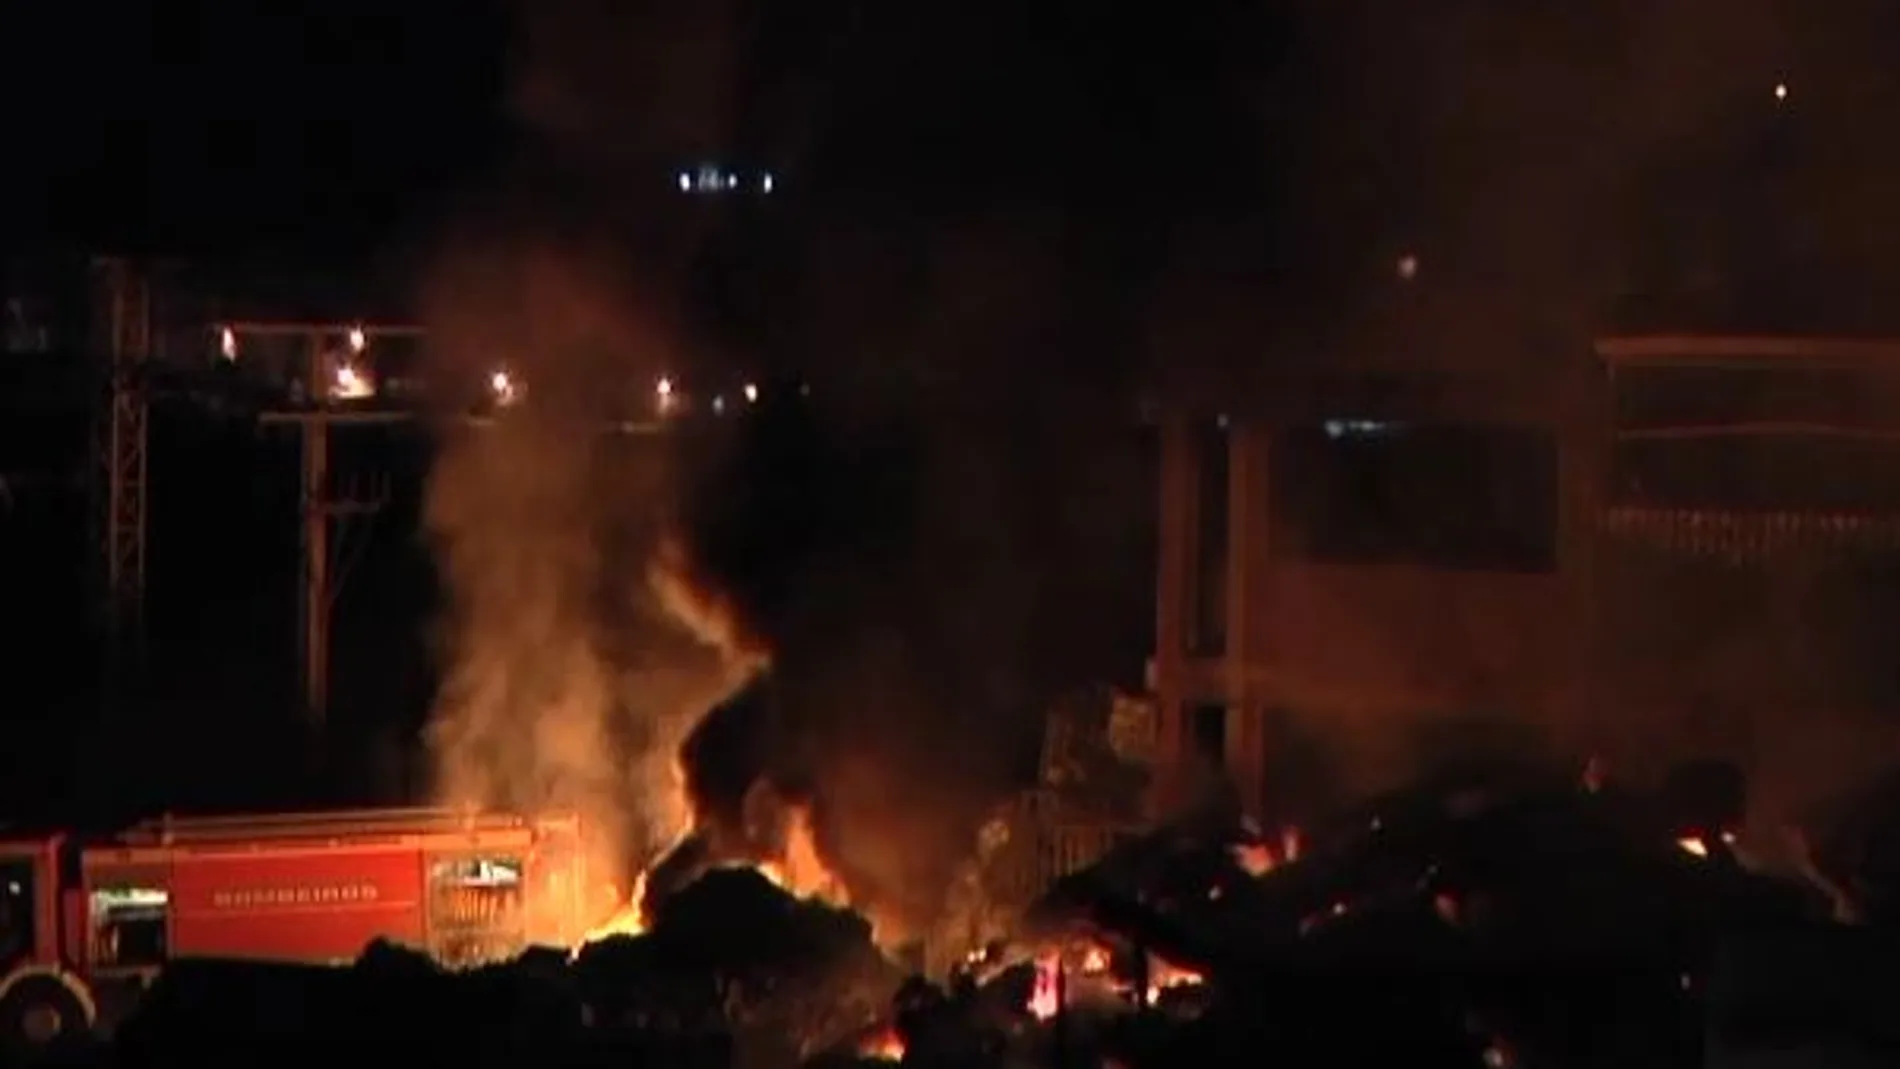 Devastador incendio en un polígono industrial de Coruña